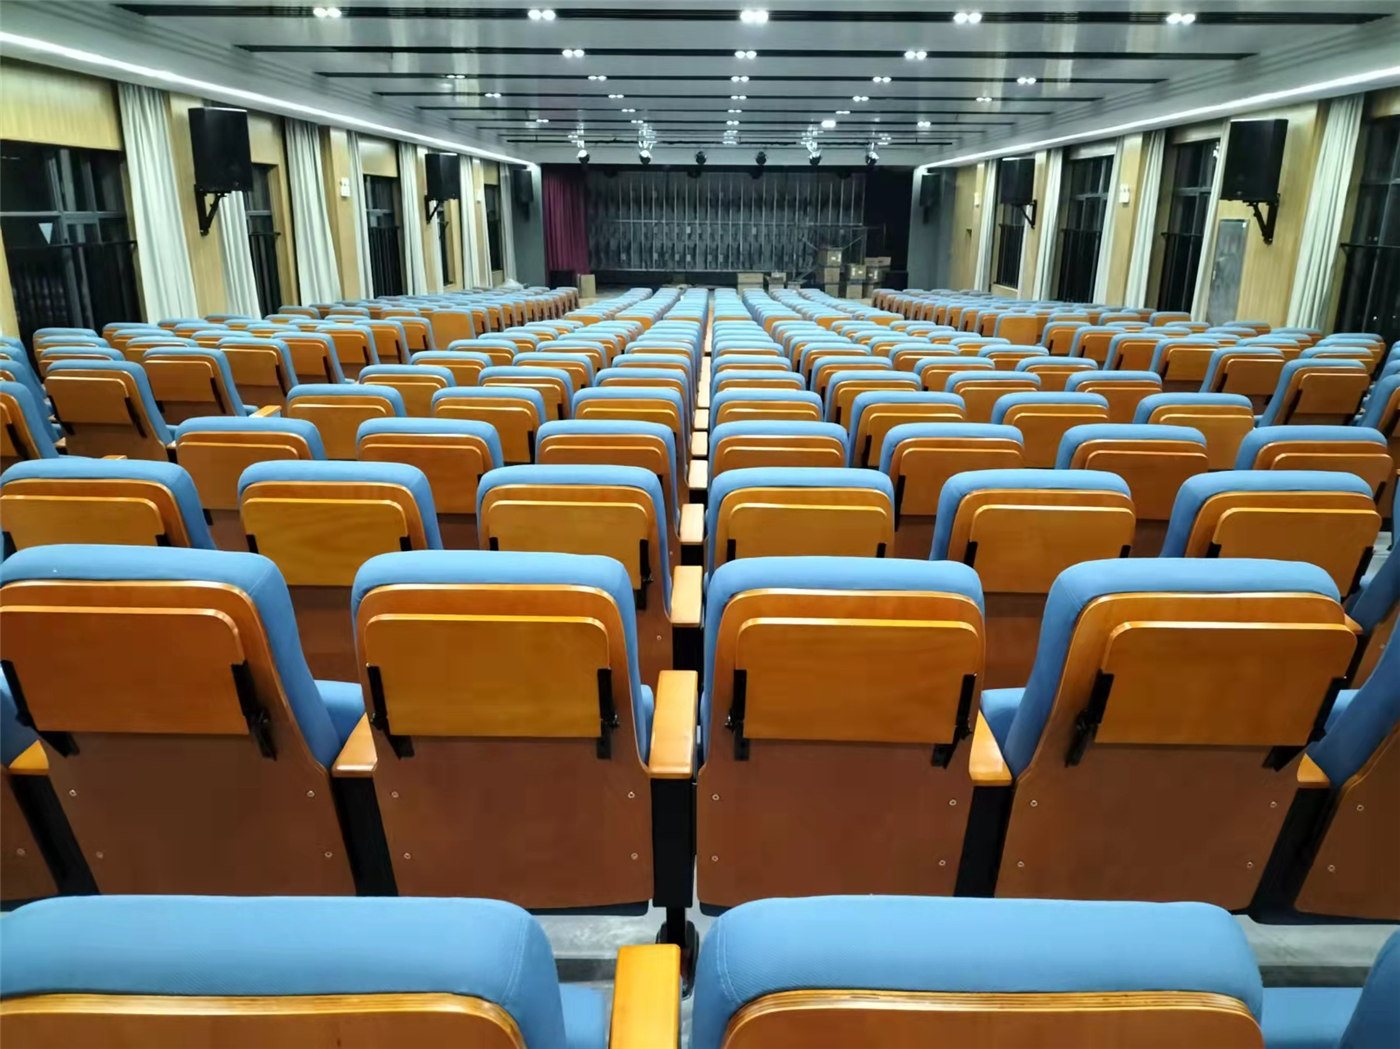 Deixe uma impressão duradoura com soluções luxuosas de assentos para auditórios de fabricantes respeitados2